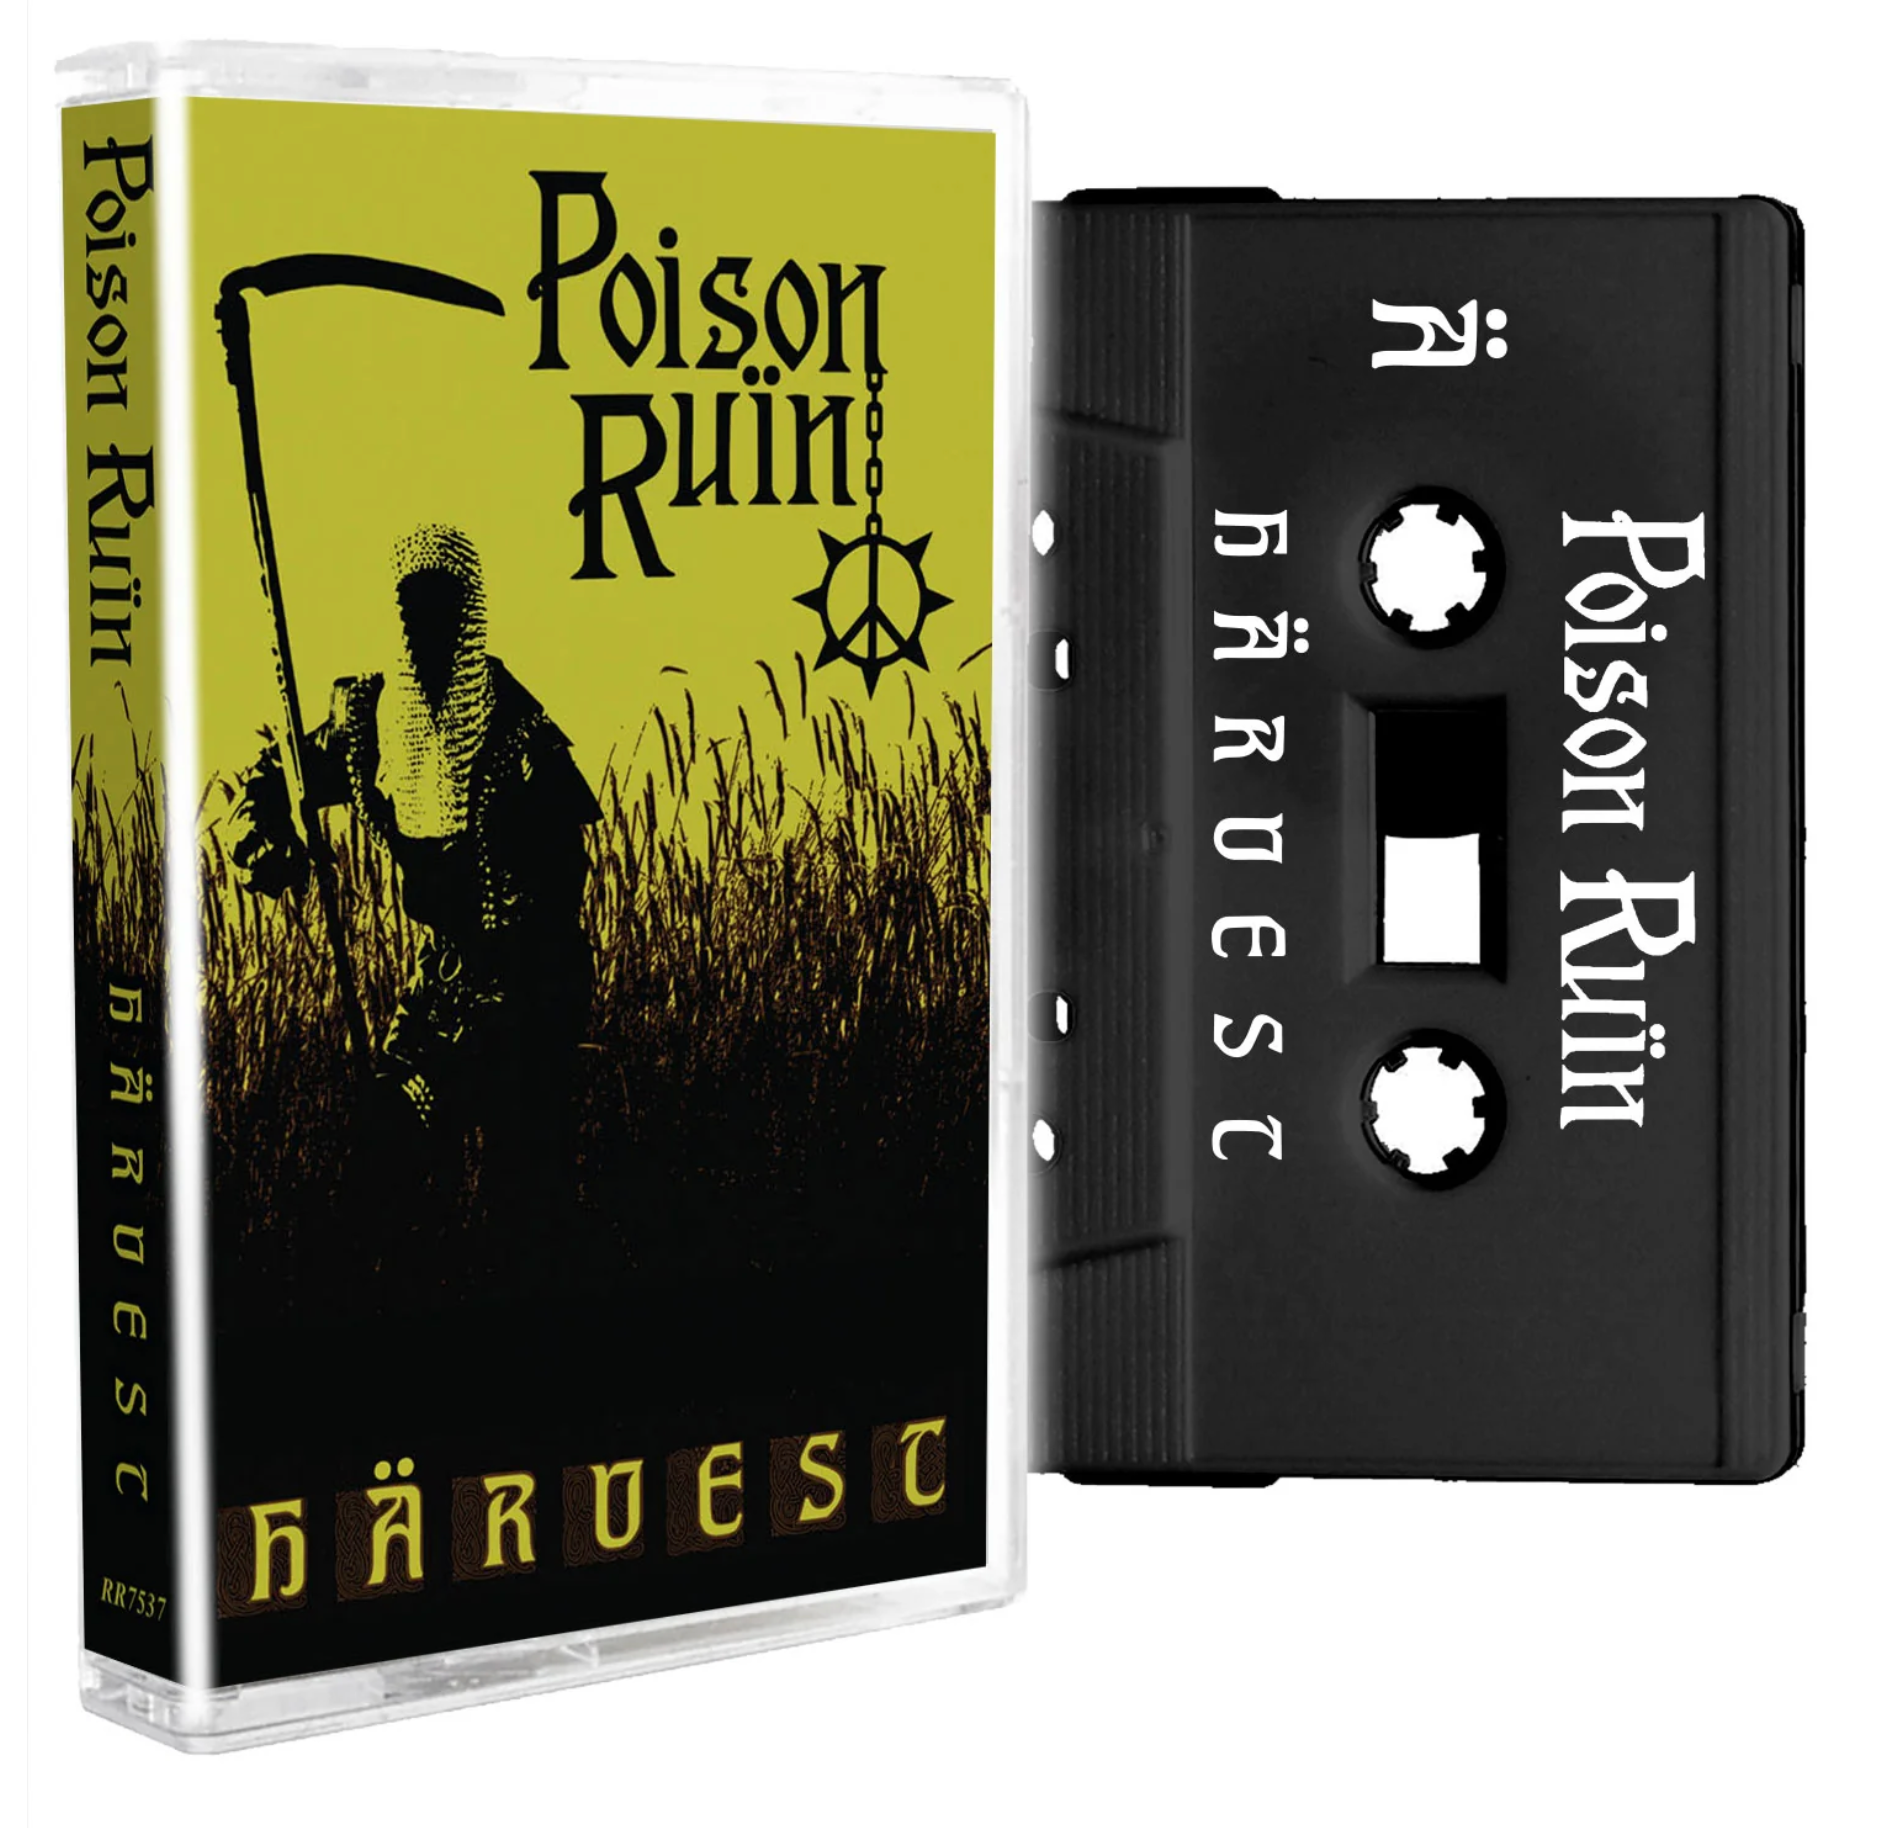 POISON RUIN - HARVEST Cassette Tape